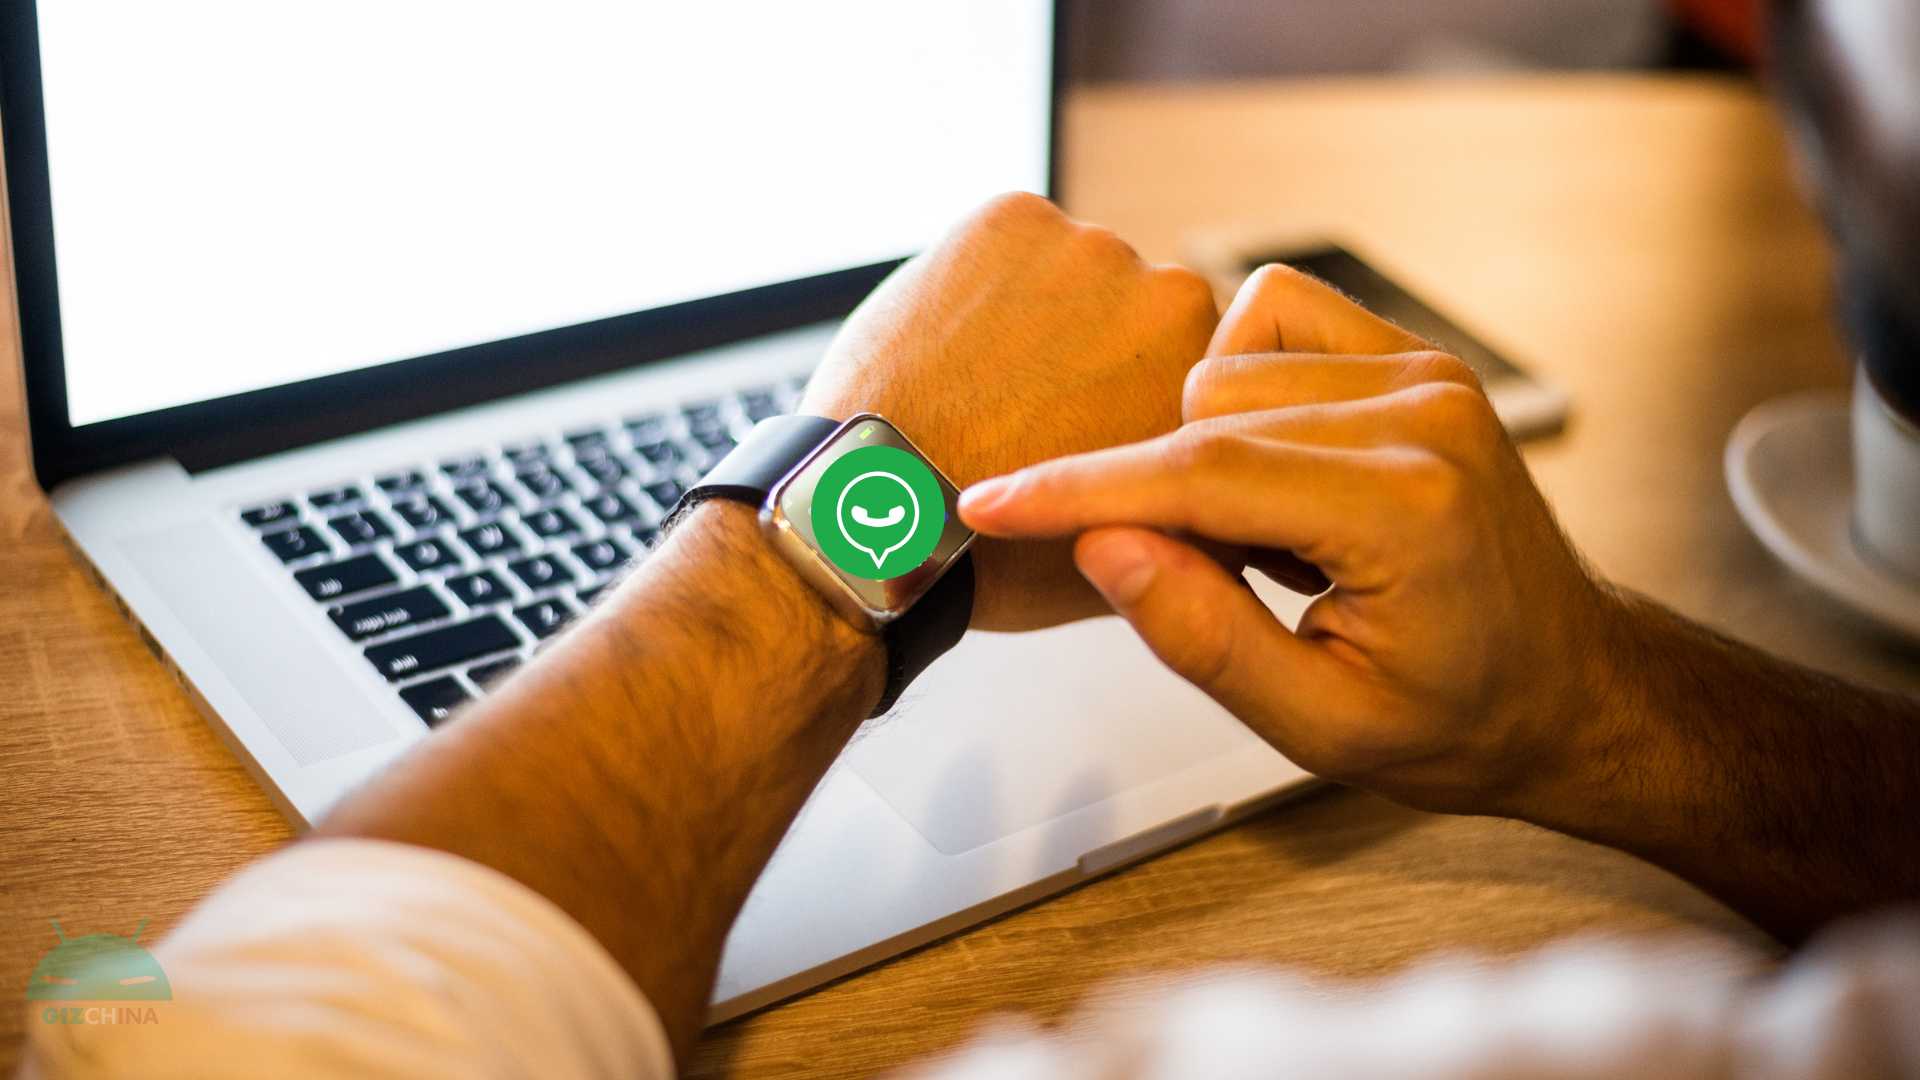 Come installare WhatsApp sullo smartwatch